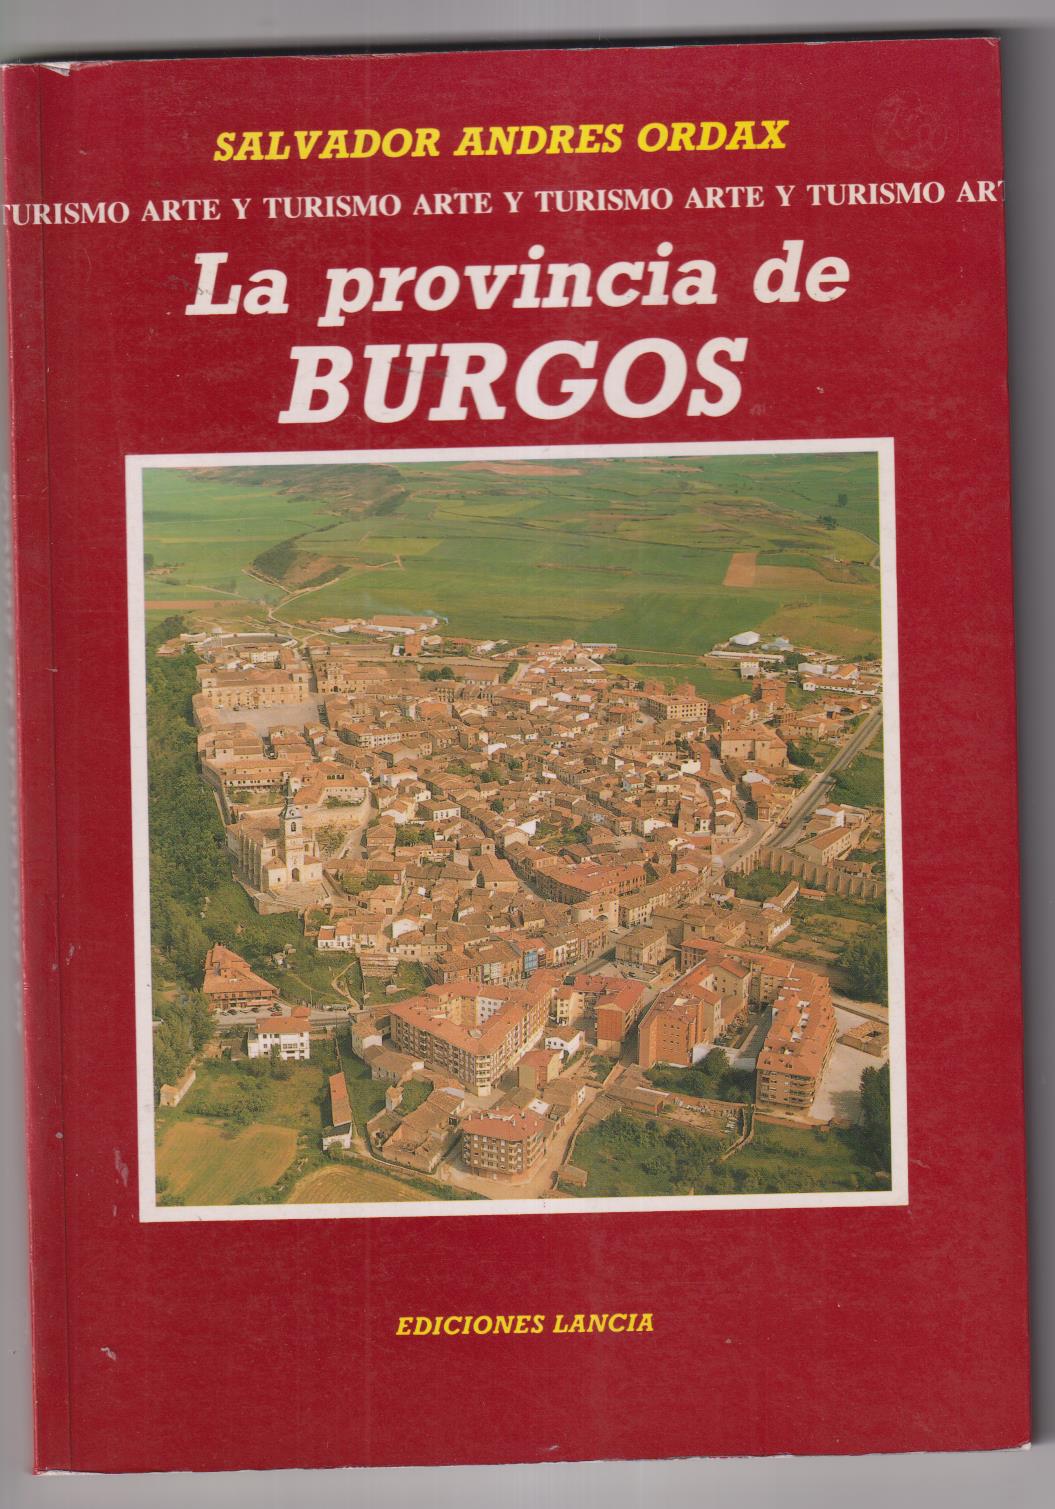 Salvador Andrés Ordax. La Provincia de Burgos. Ediciones Lancia 1991